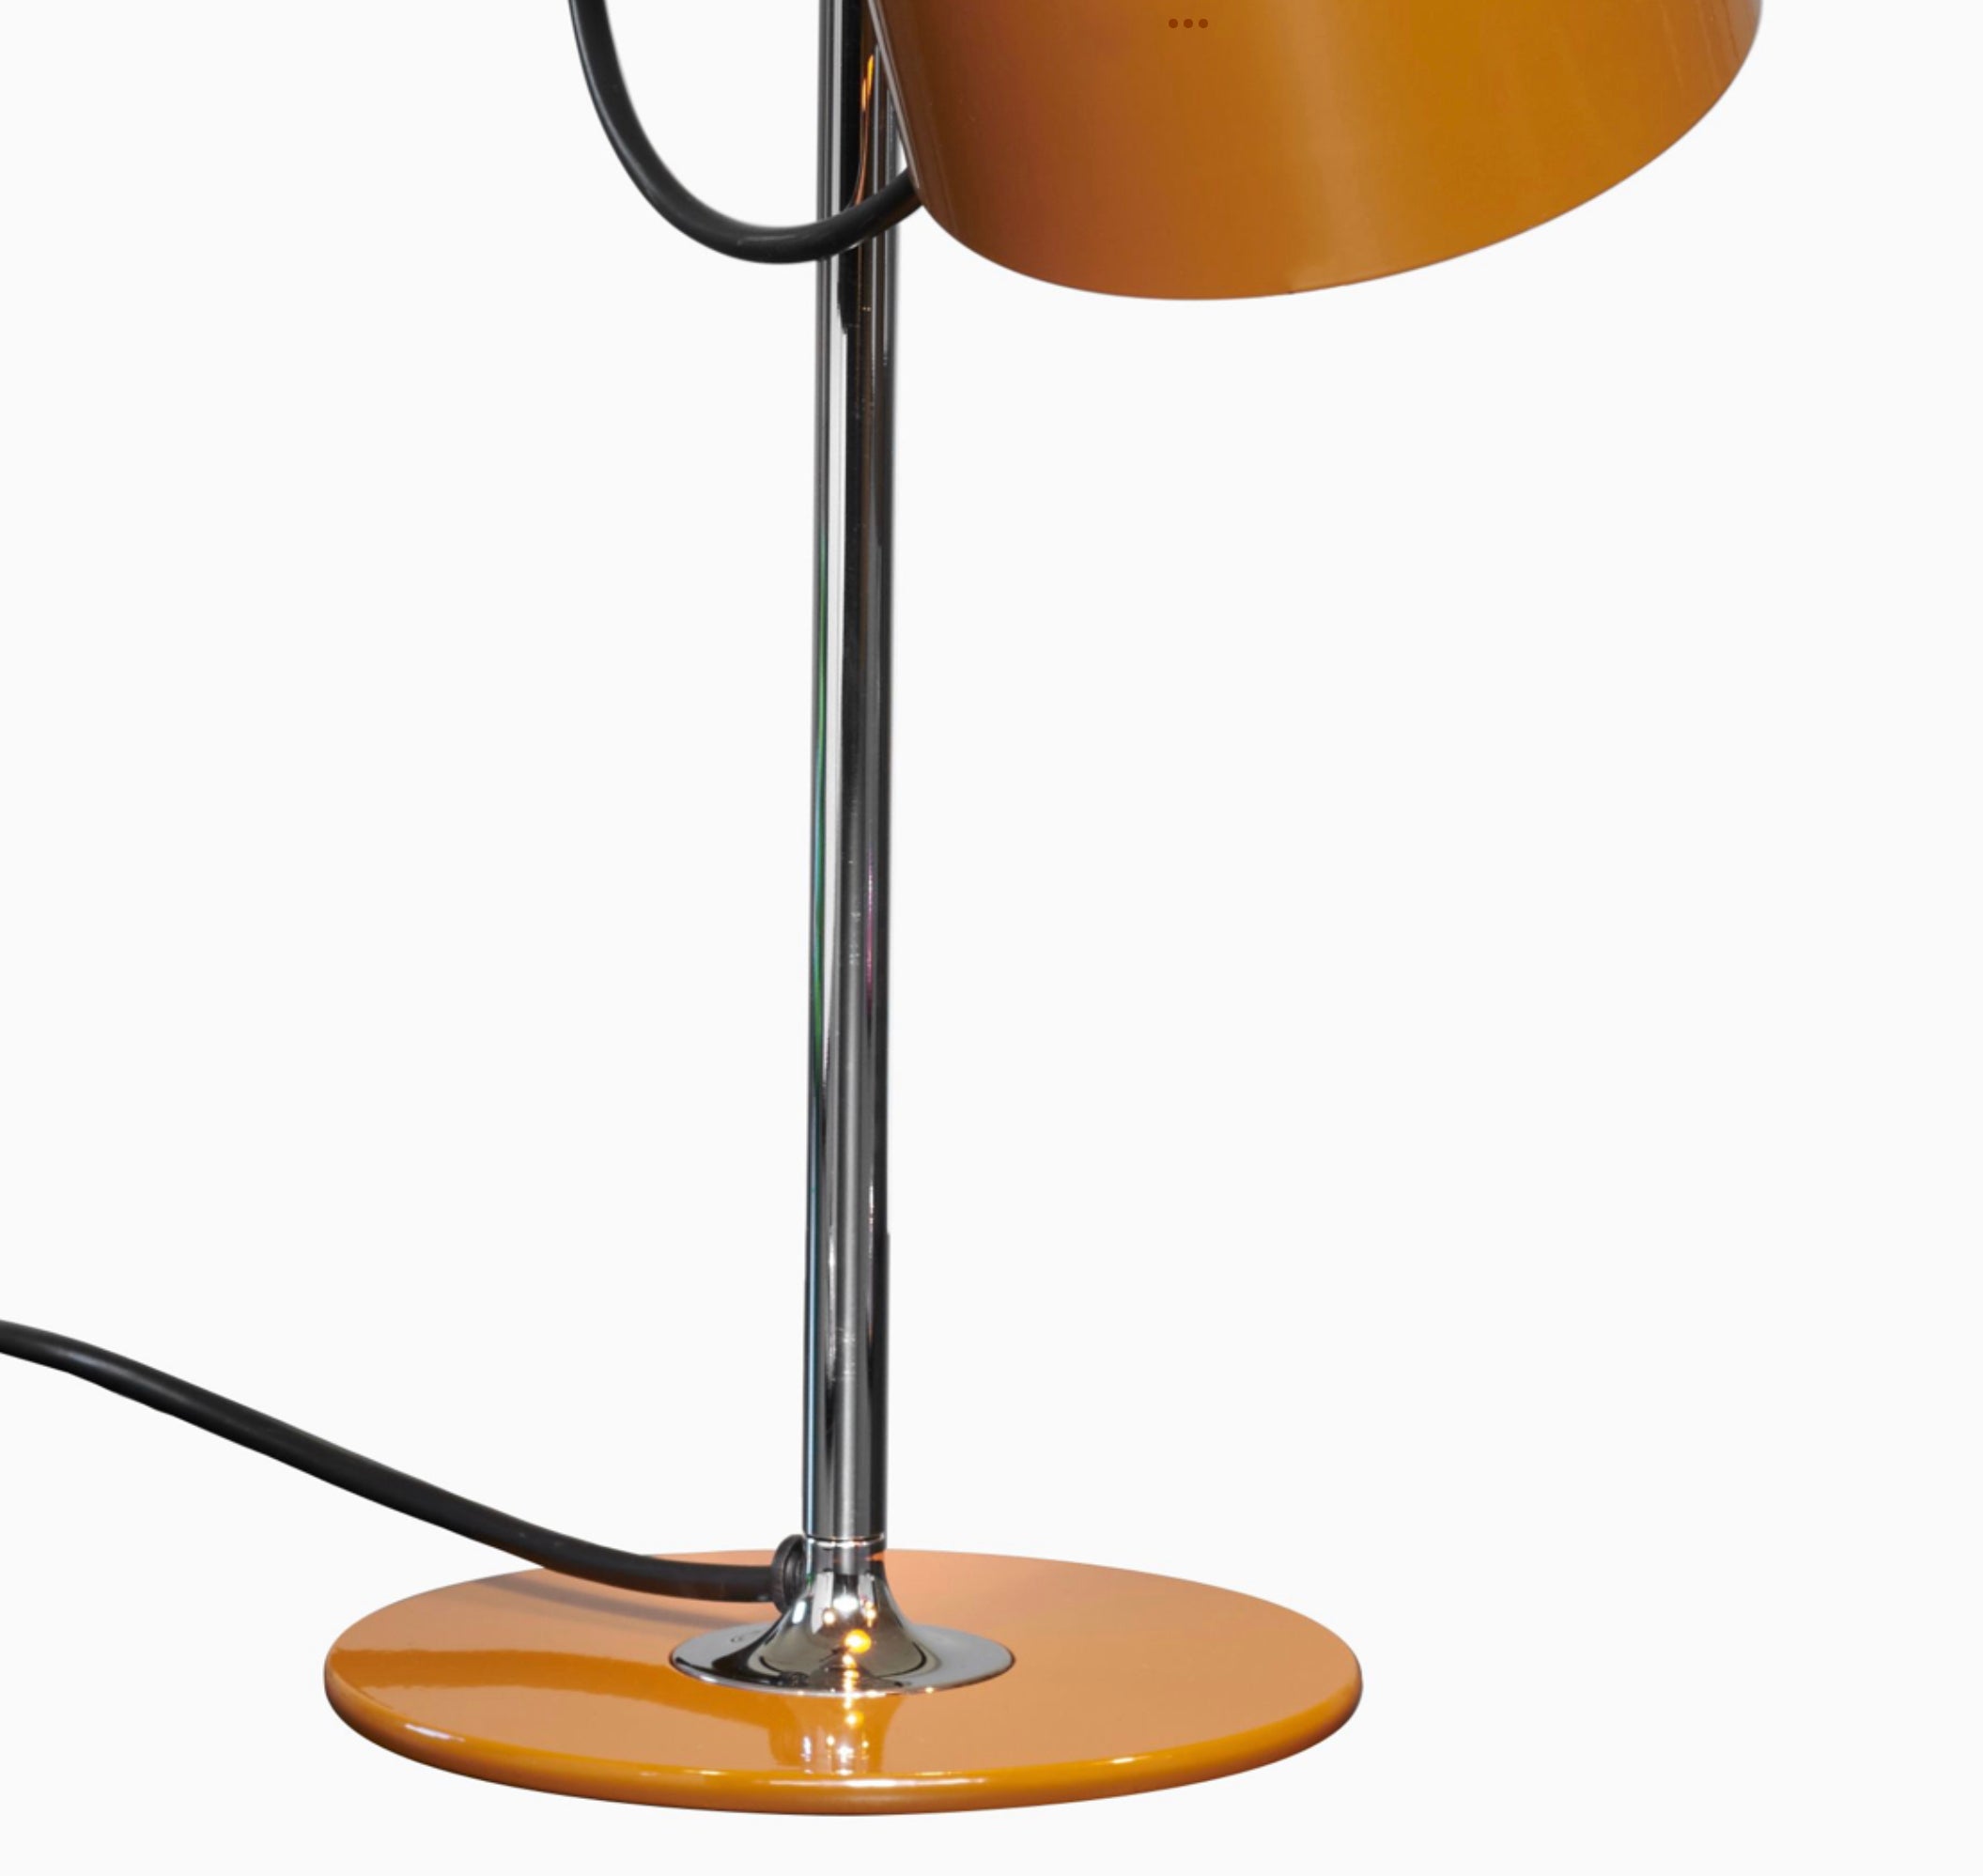 Lampe de table modèle Mini Coupe conçu par Joe Colombo.
Lampe de table à lumière directe, base en métal laqué, tige chromée, réflecteur réglable en aluminium laqué.
Fabriqué par Oluce, Italie.

Coupé est née en 1967 de l'intuition créatrice de Joe